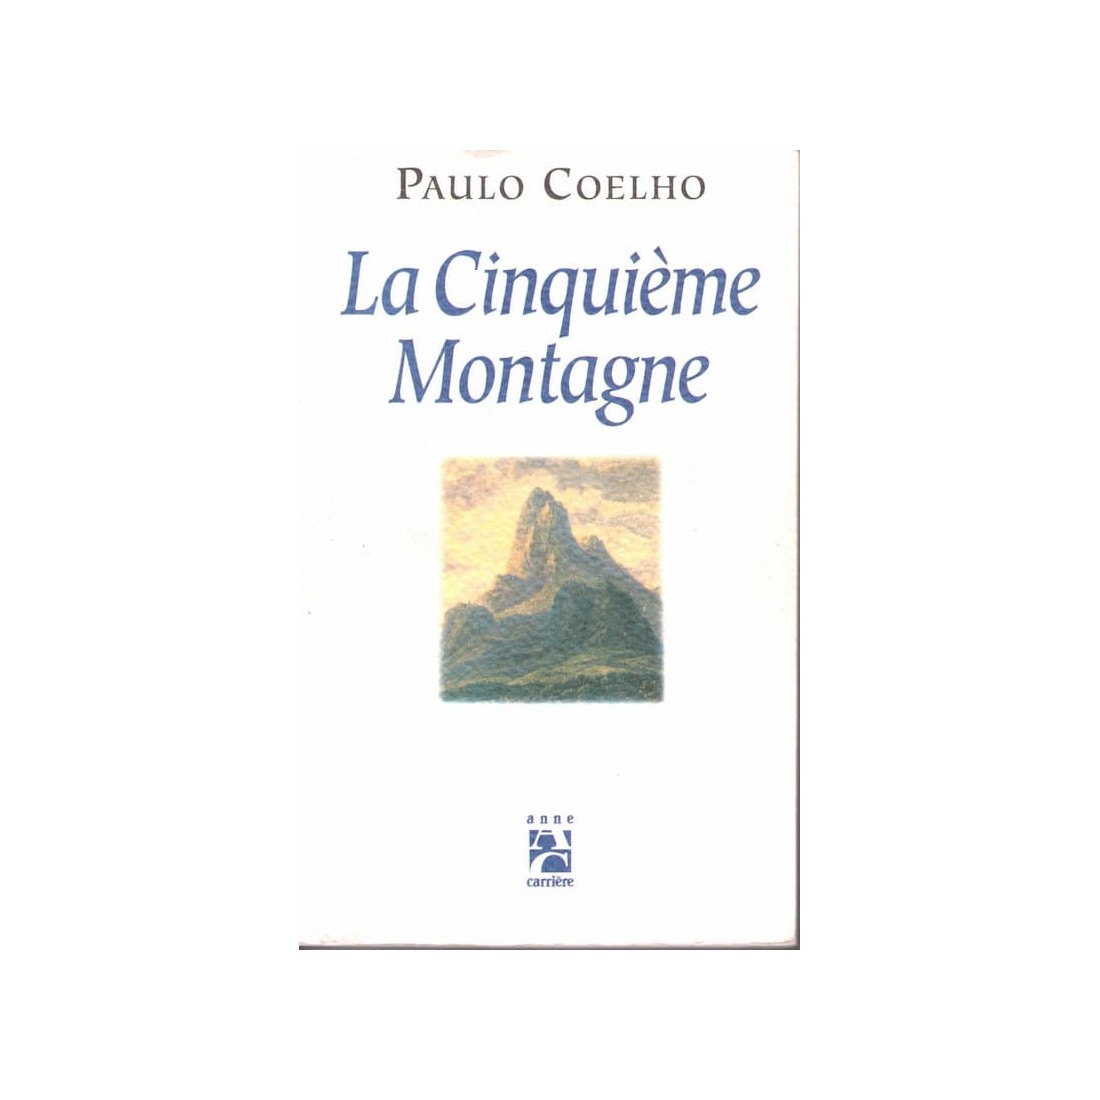 La cinquième montagne - Roman de Paulo Coelho - Ocazlivres.com